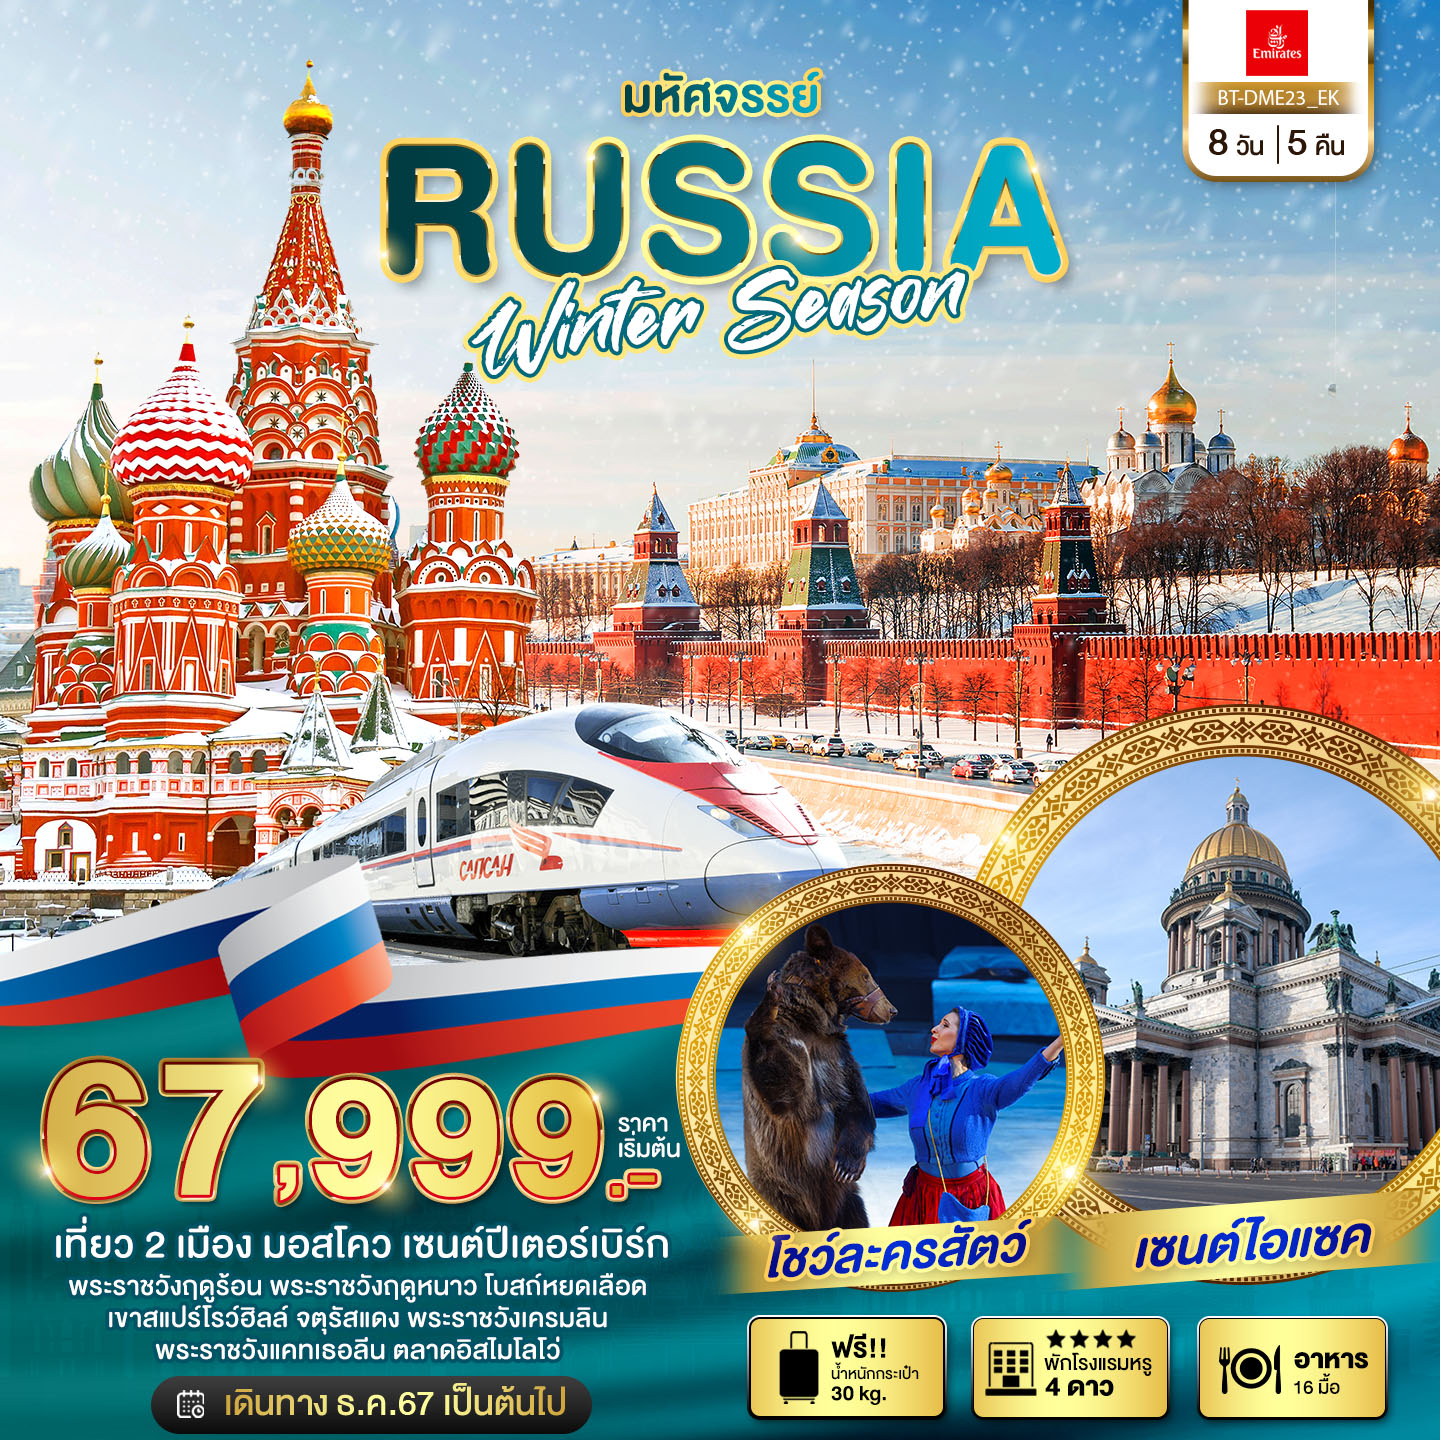 ทัวร์รัสเซีย มหัศจรรย์ รัสเซีย มอสโคว เซนต์ปีเตอร์เบิร์ก WINTER SEASON 8วัน 5คืน (EK)